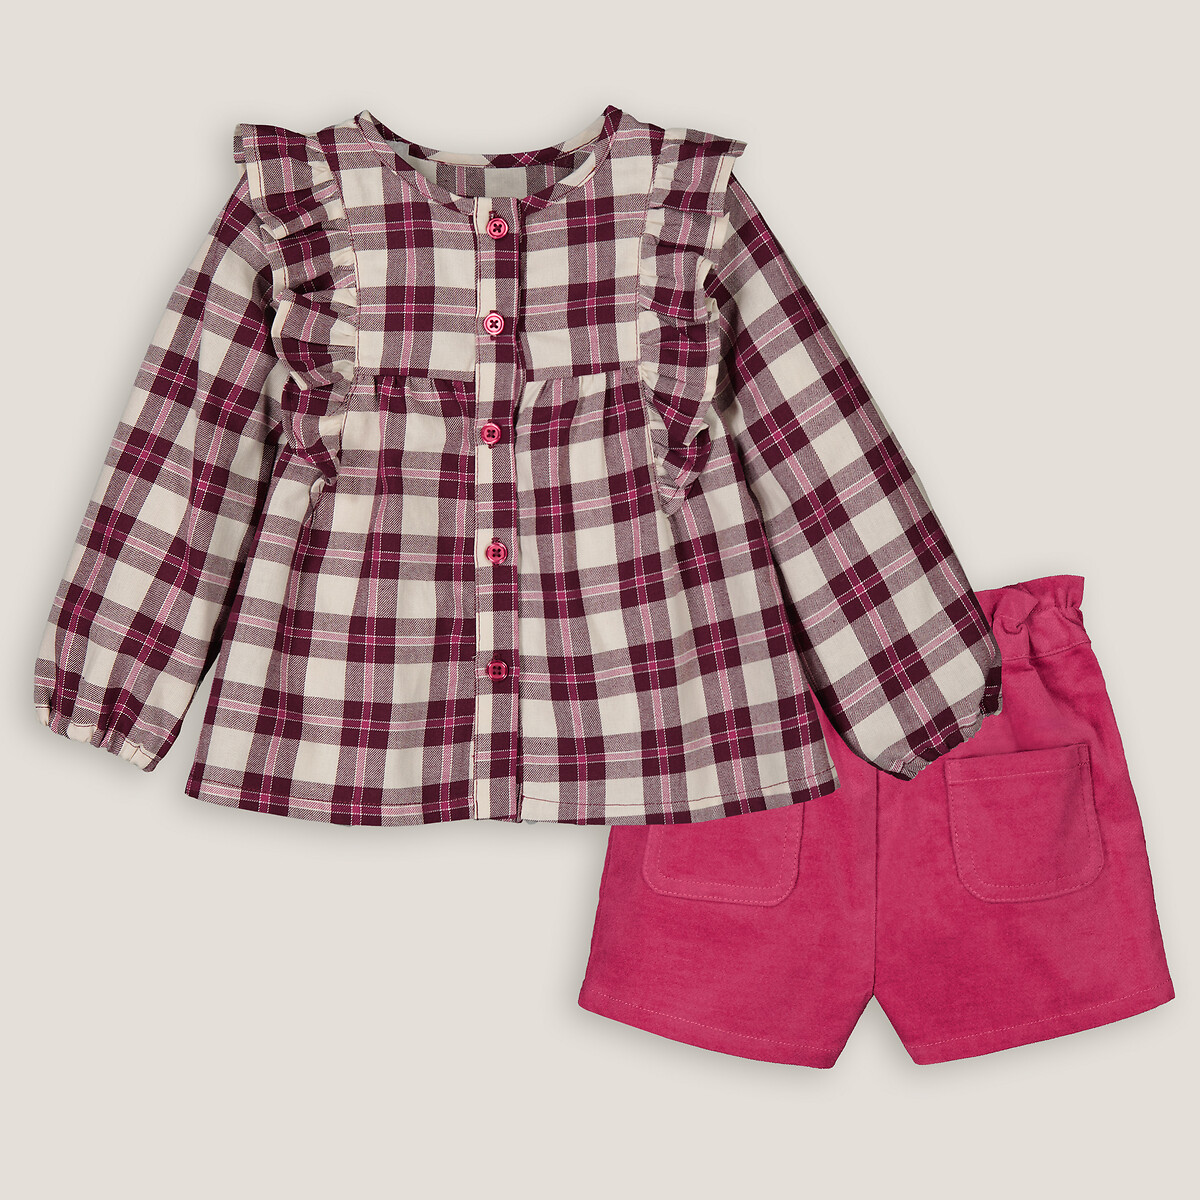 Комплект из двух вещей блузка и шорты 5 лет - 108 см розовый блузка signature из вышивки гладью 5 лет 108 см бежевый